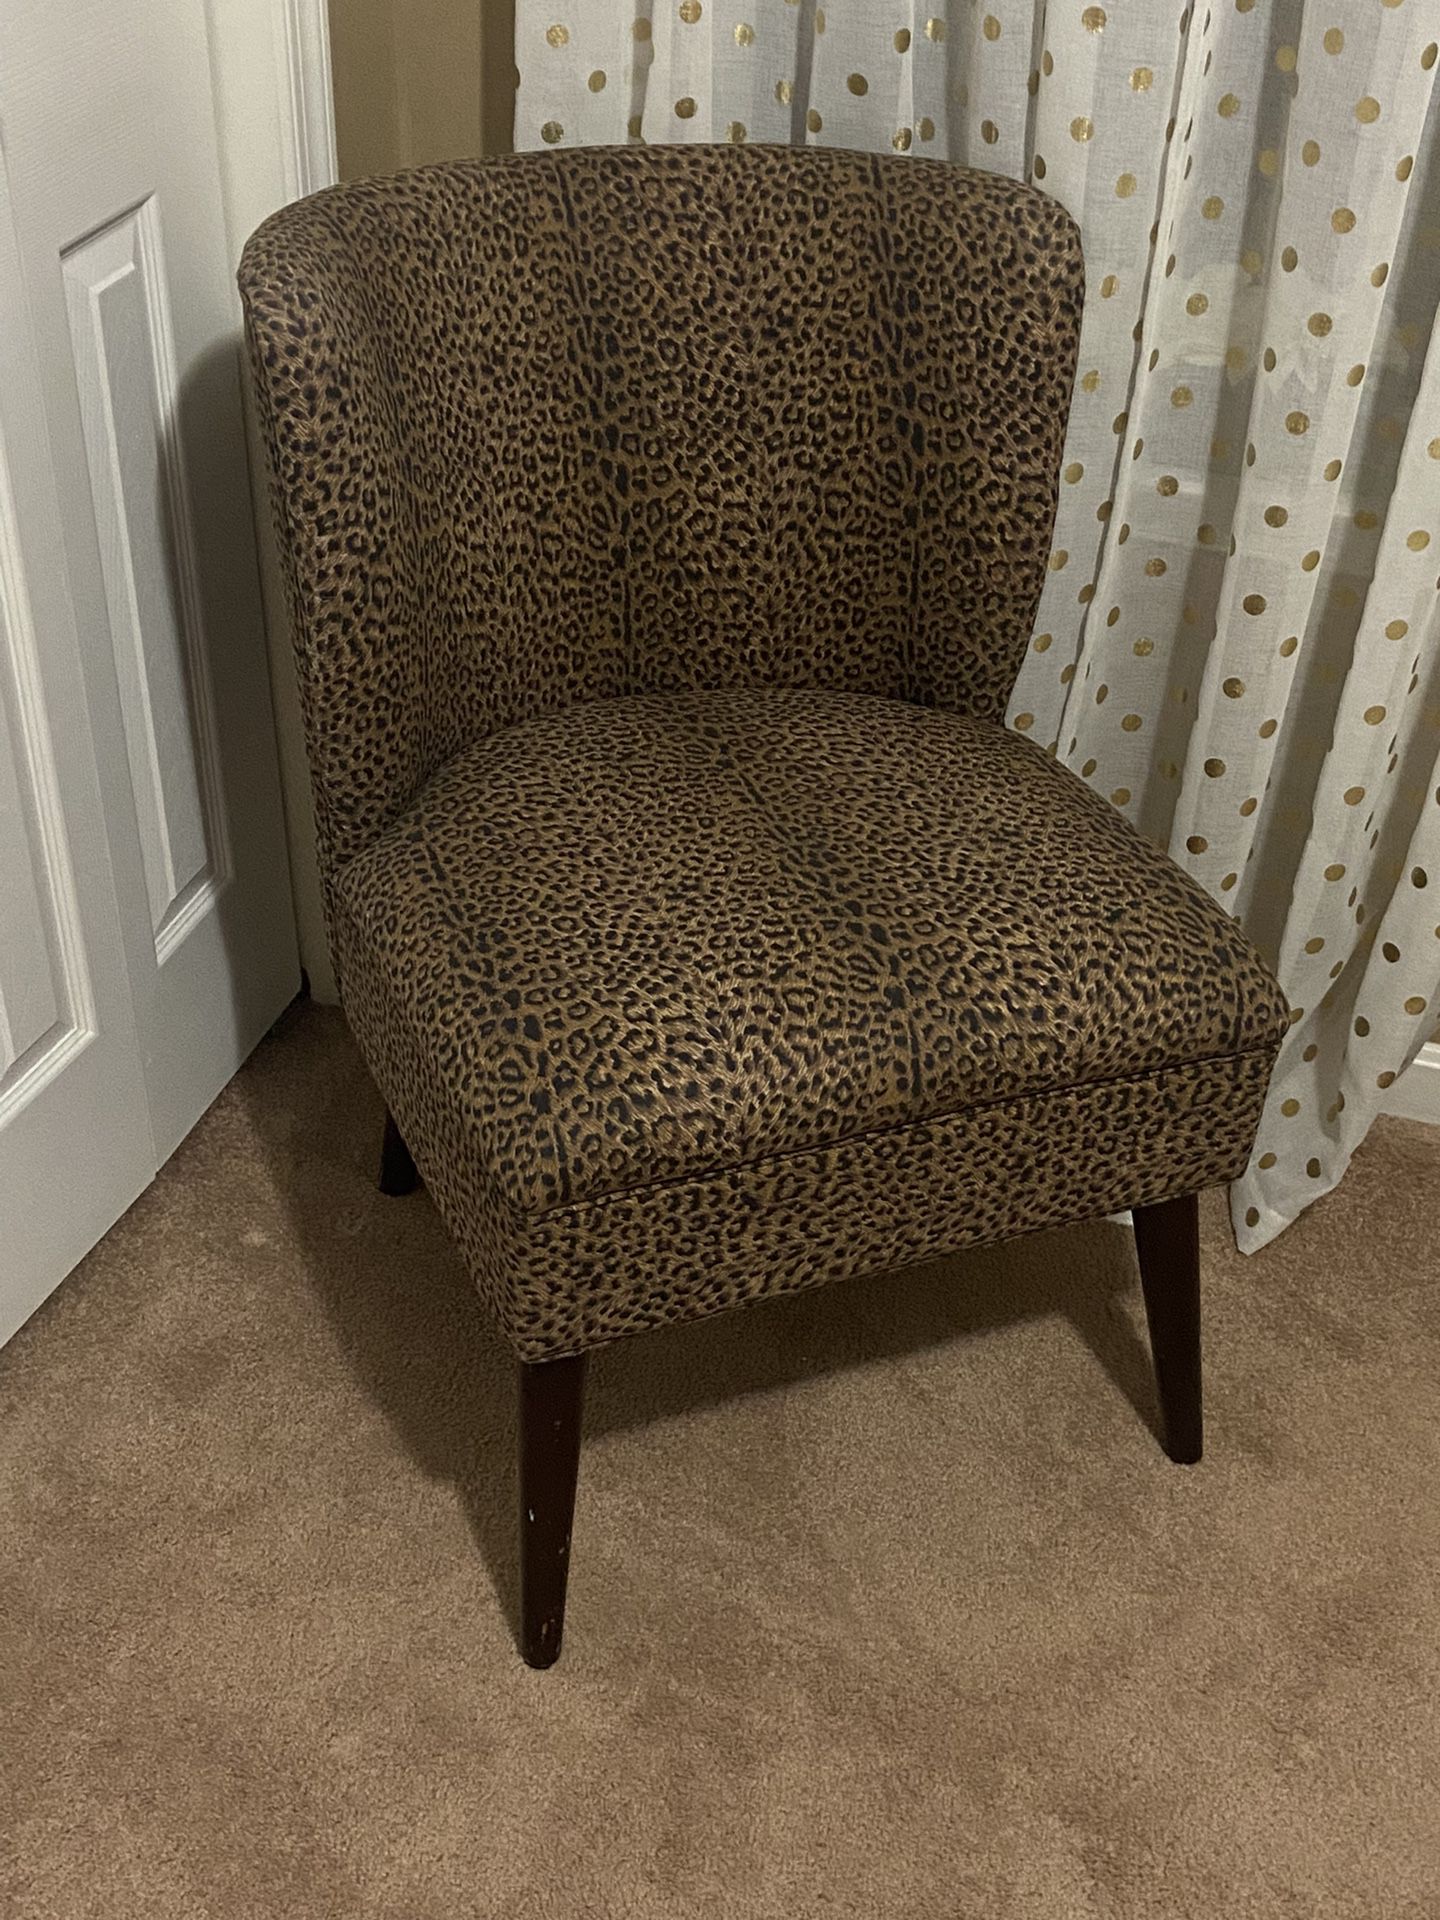 Cheetah chair